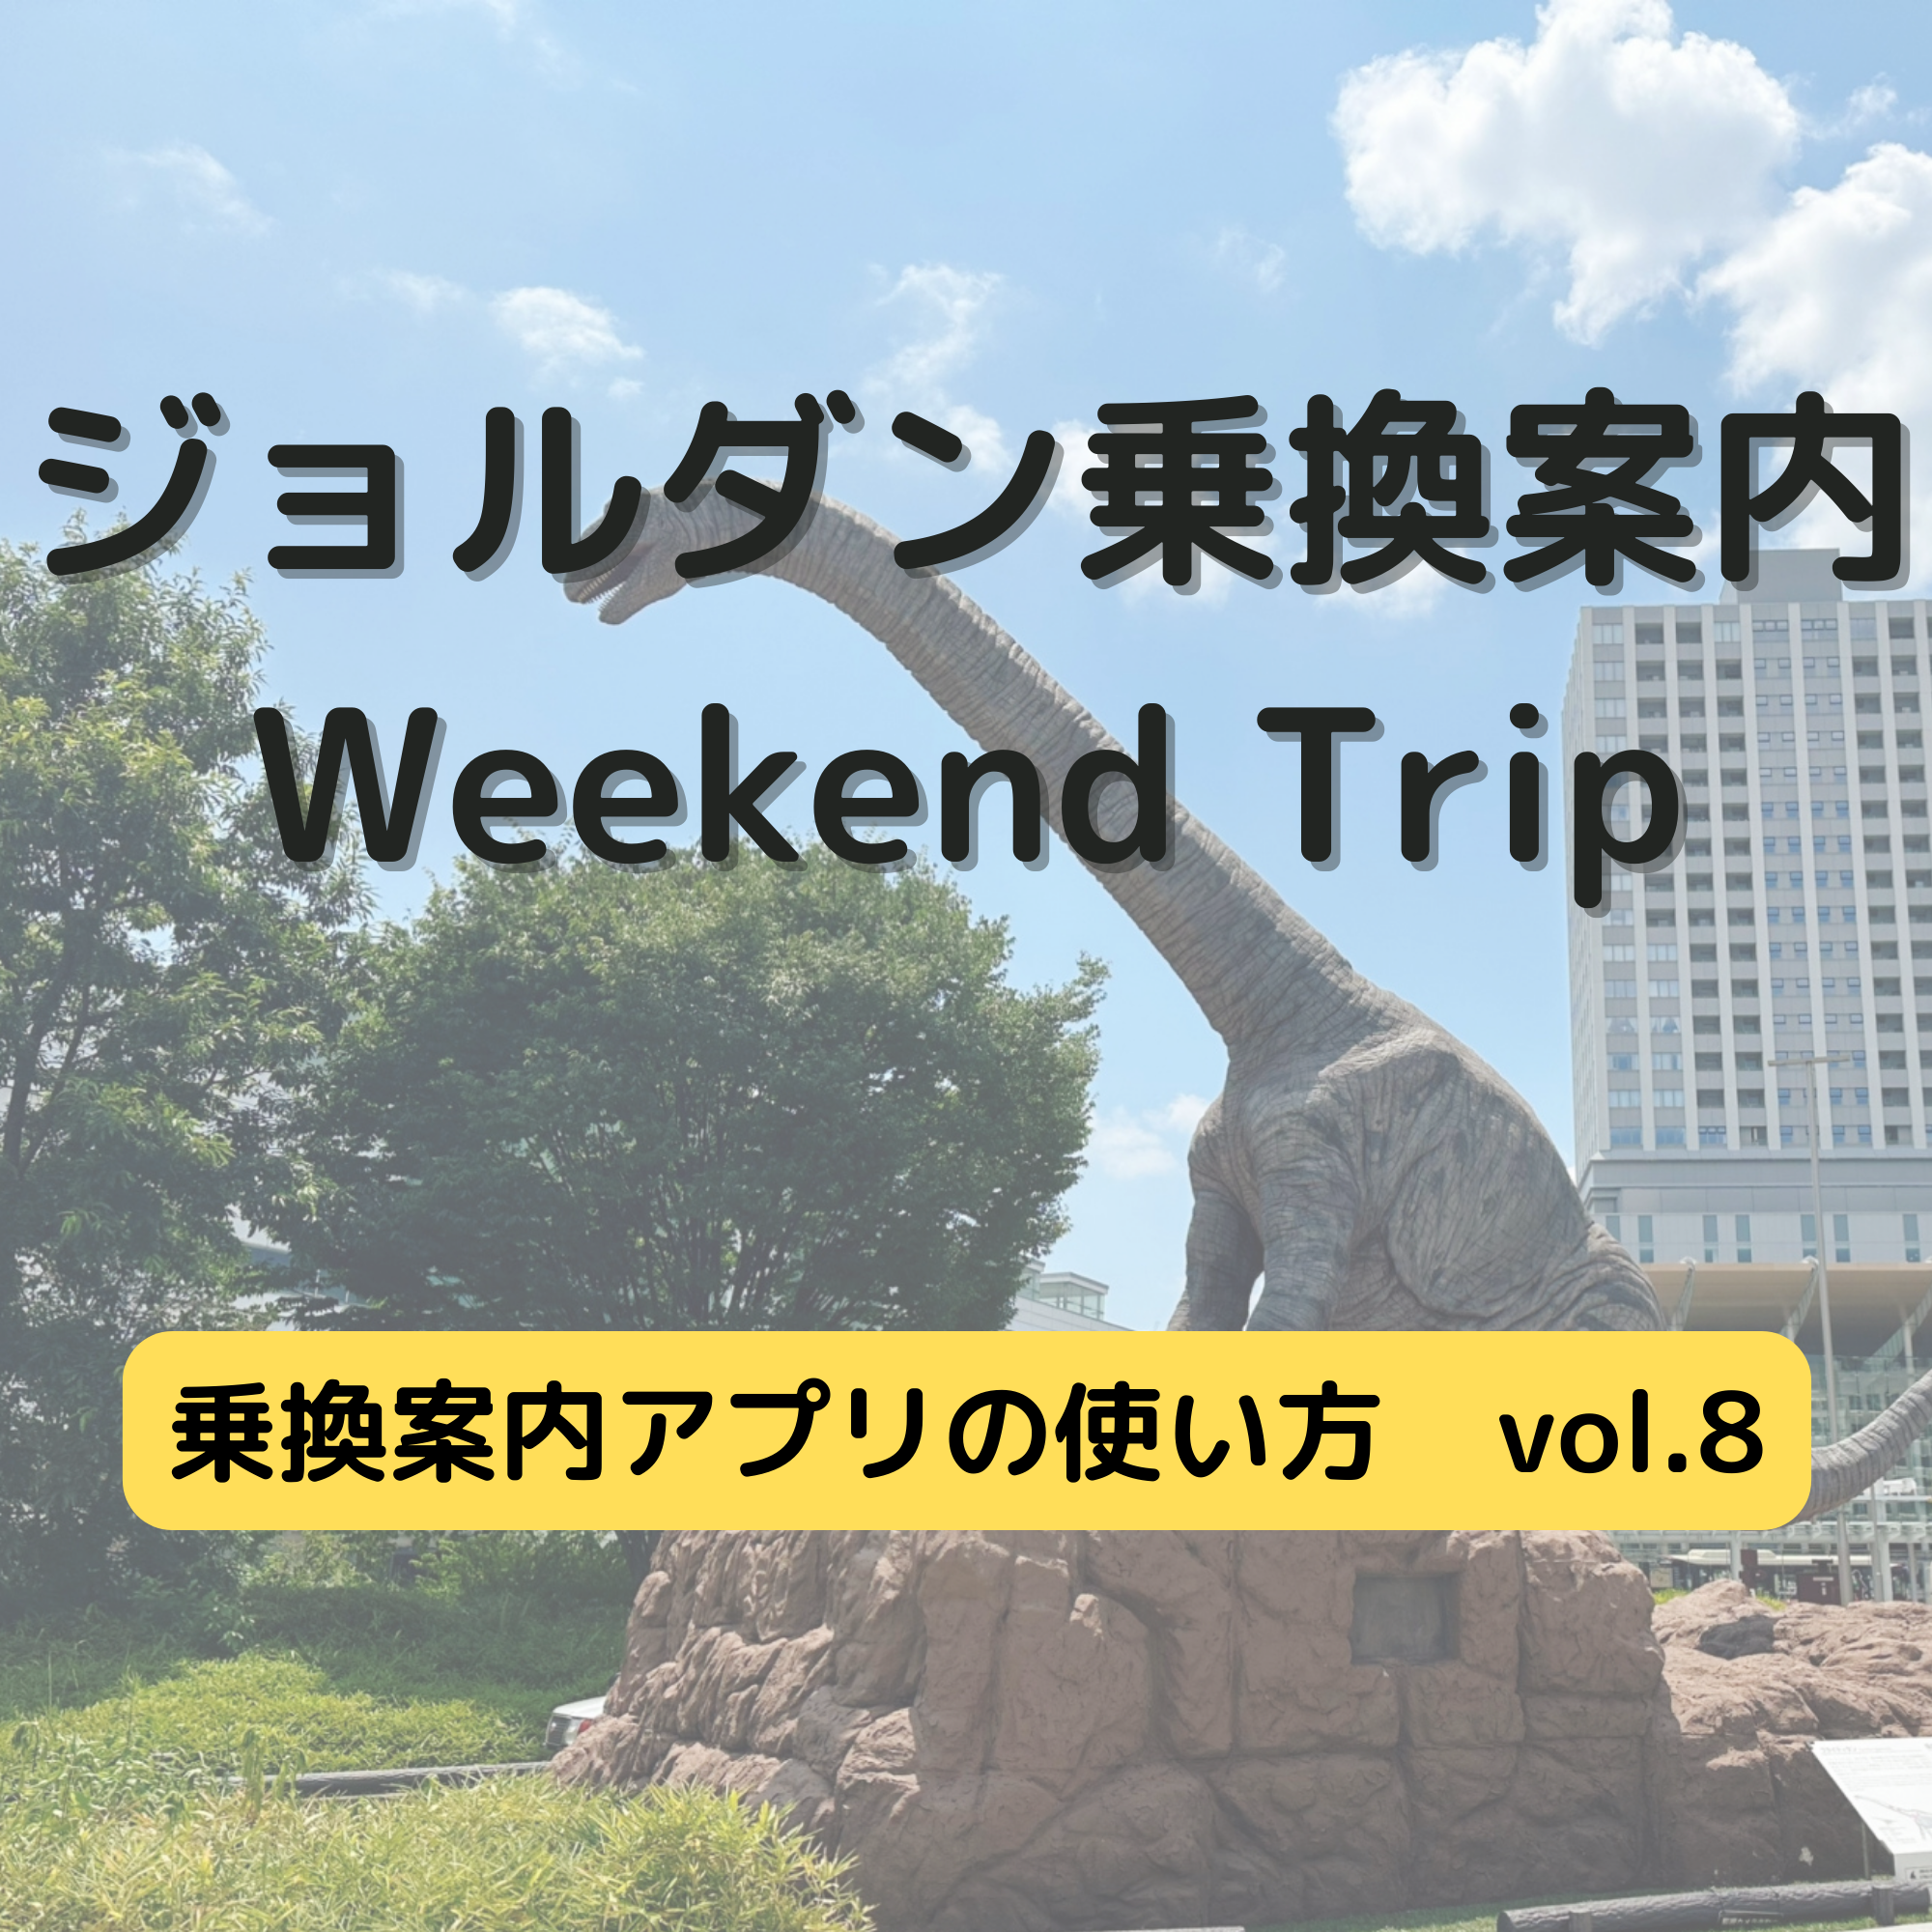 ジョルダン乗換案内　Weekend Trip-乗換案内アプリの使い方　vol.8-